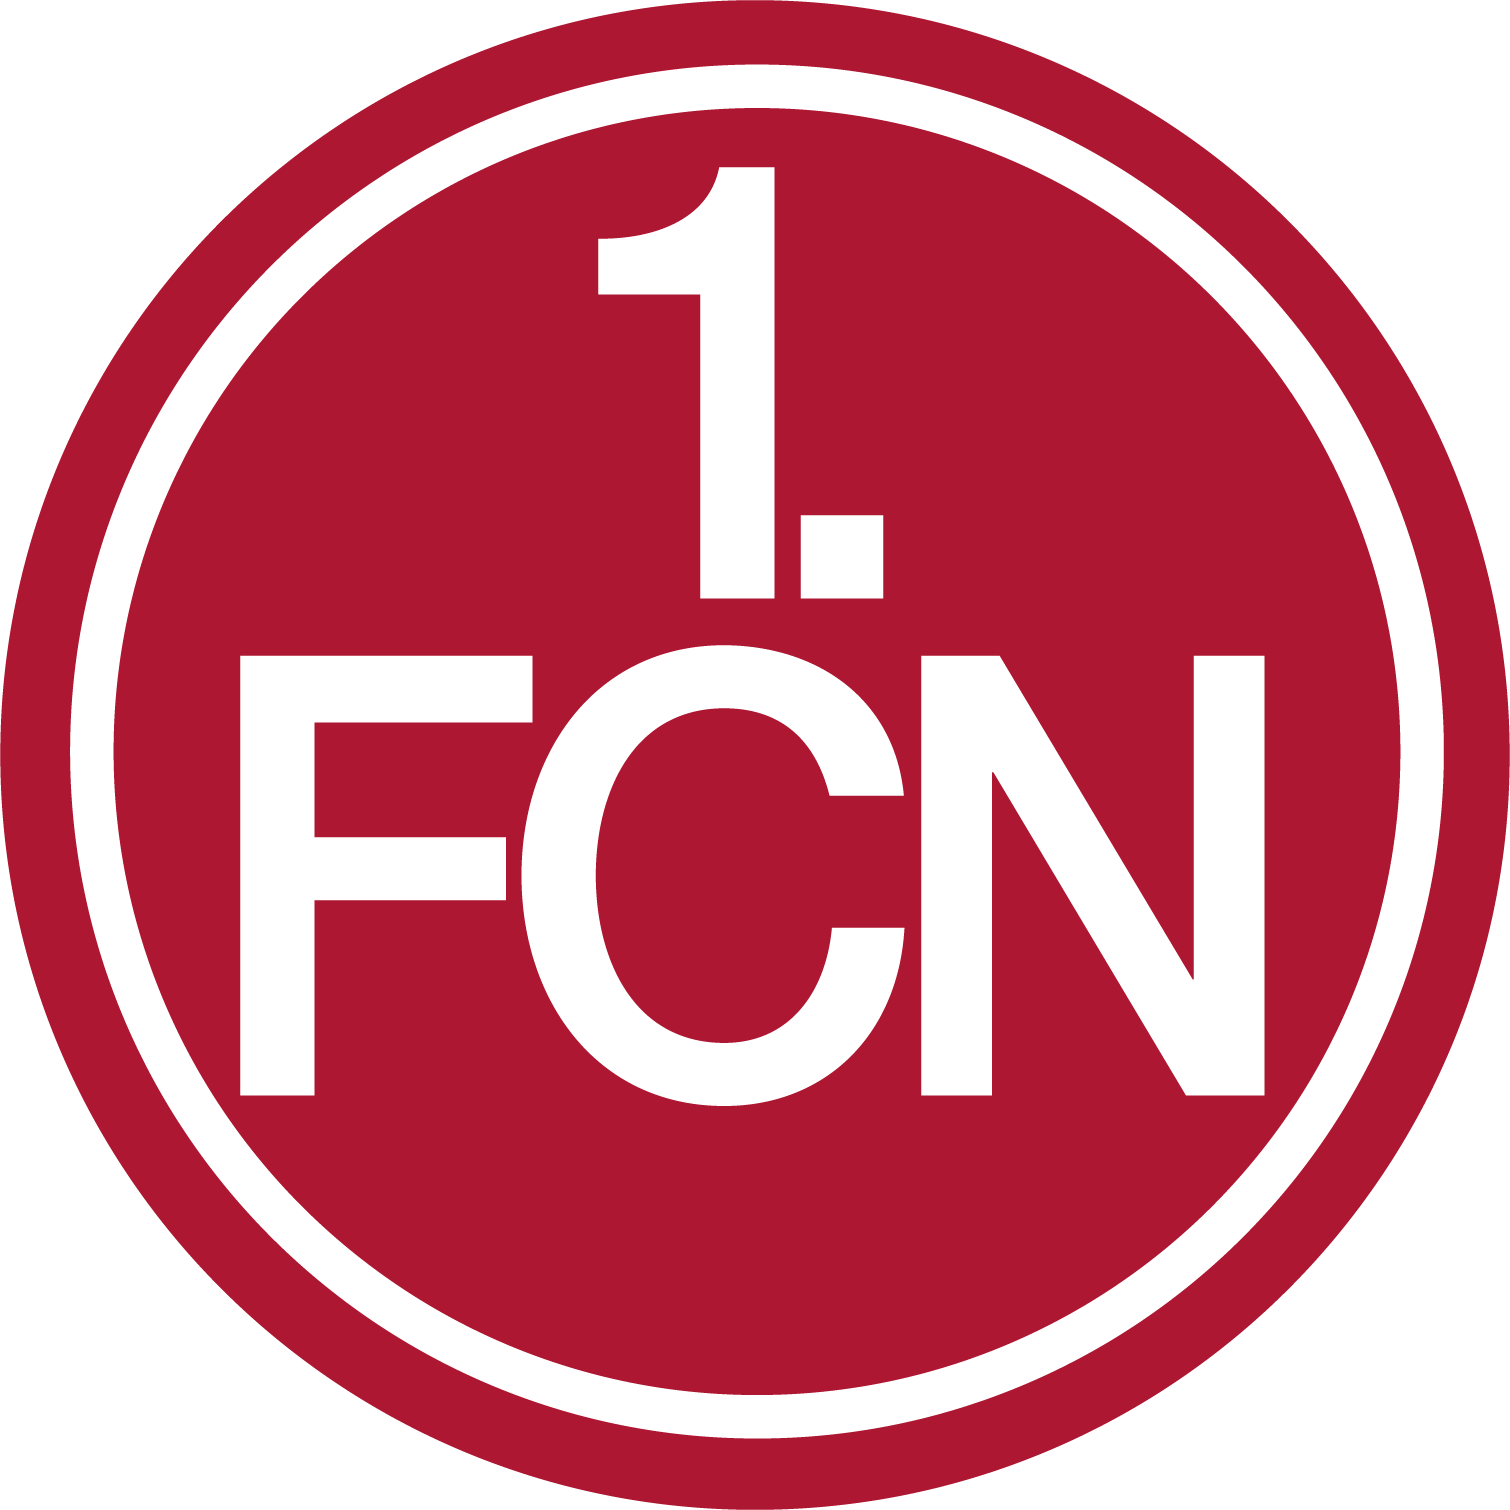 Image 1. FCN